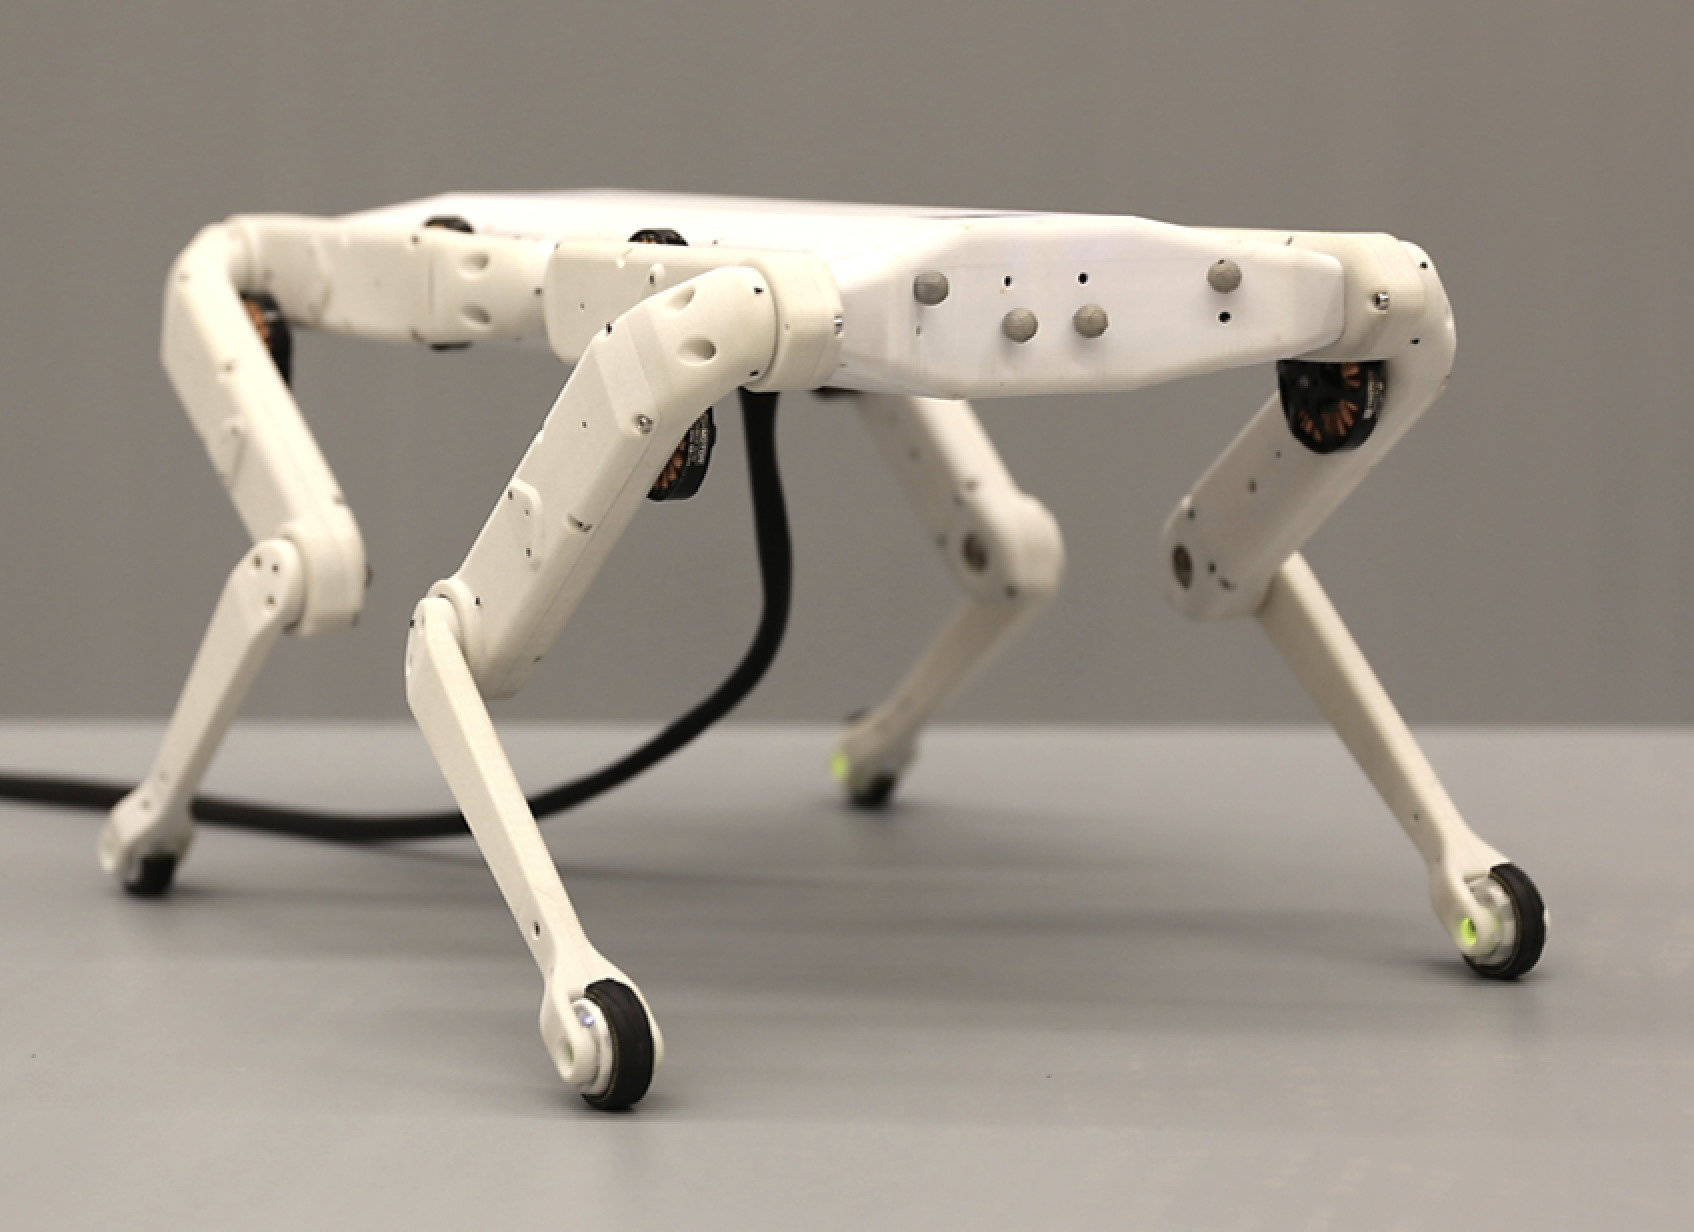 Robotyczny pies wydrukowany w drukarce 3D